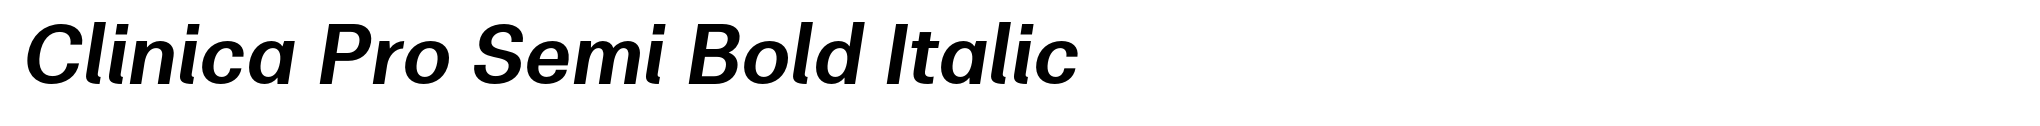 Clinica Pro Semi Bold Italic image